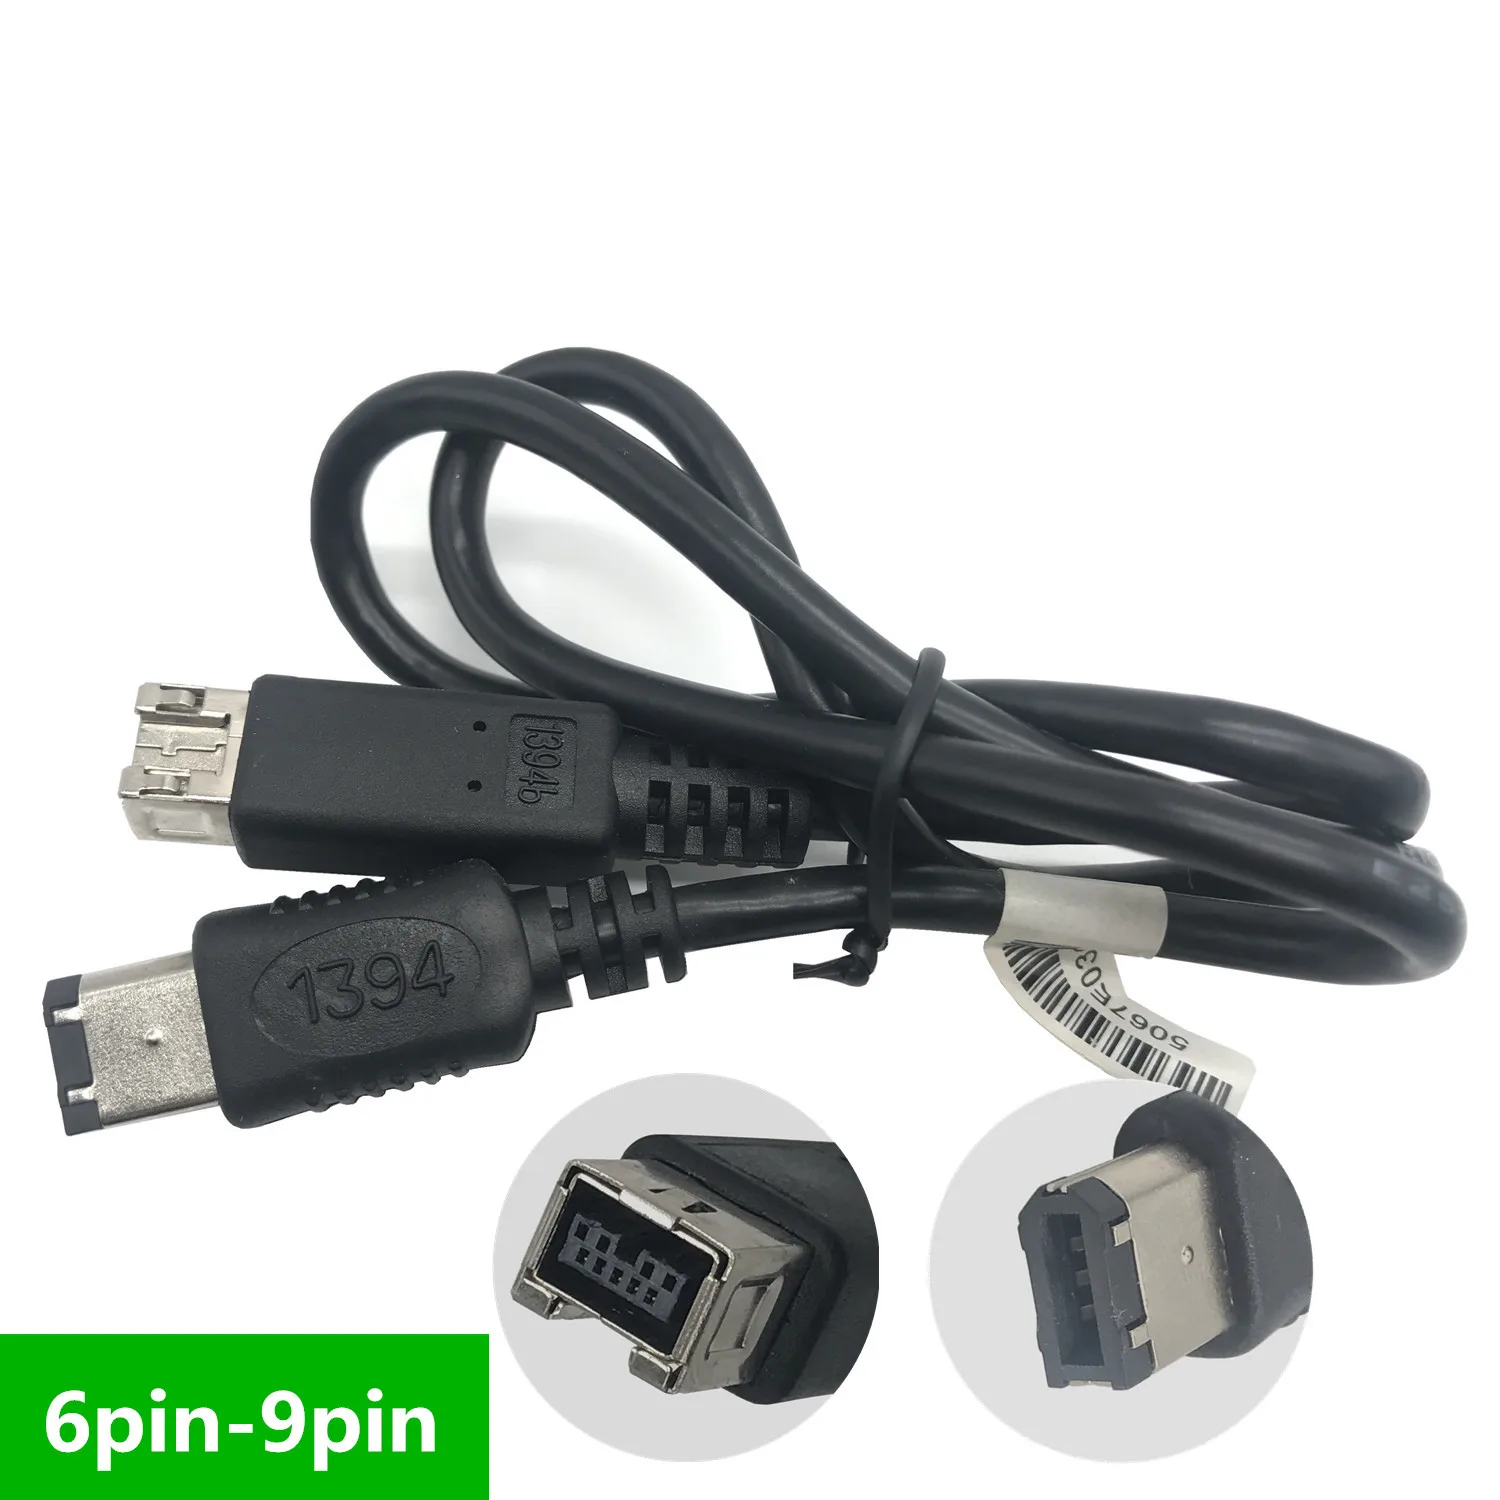 FireWire 800-400 9-pinski - 6-pinski kabel (9pin 6pin) 0,6 M IEEE 1394 Firewire 800 9-pinski / 6-pinski kabel 6 metara (9-pinski - 6-pinski)